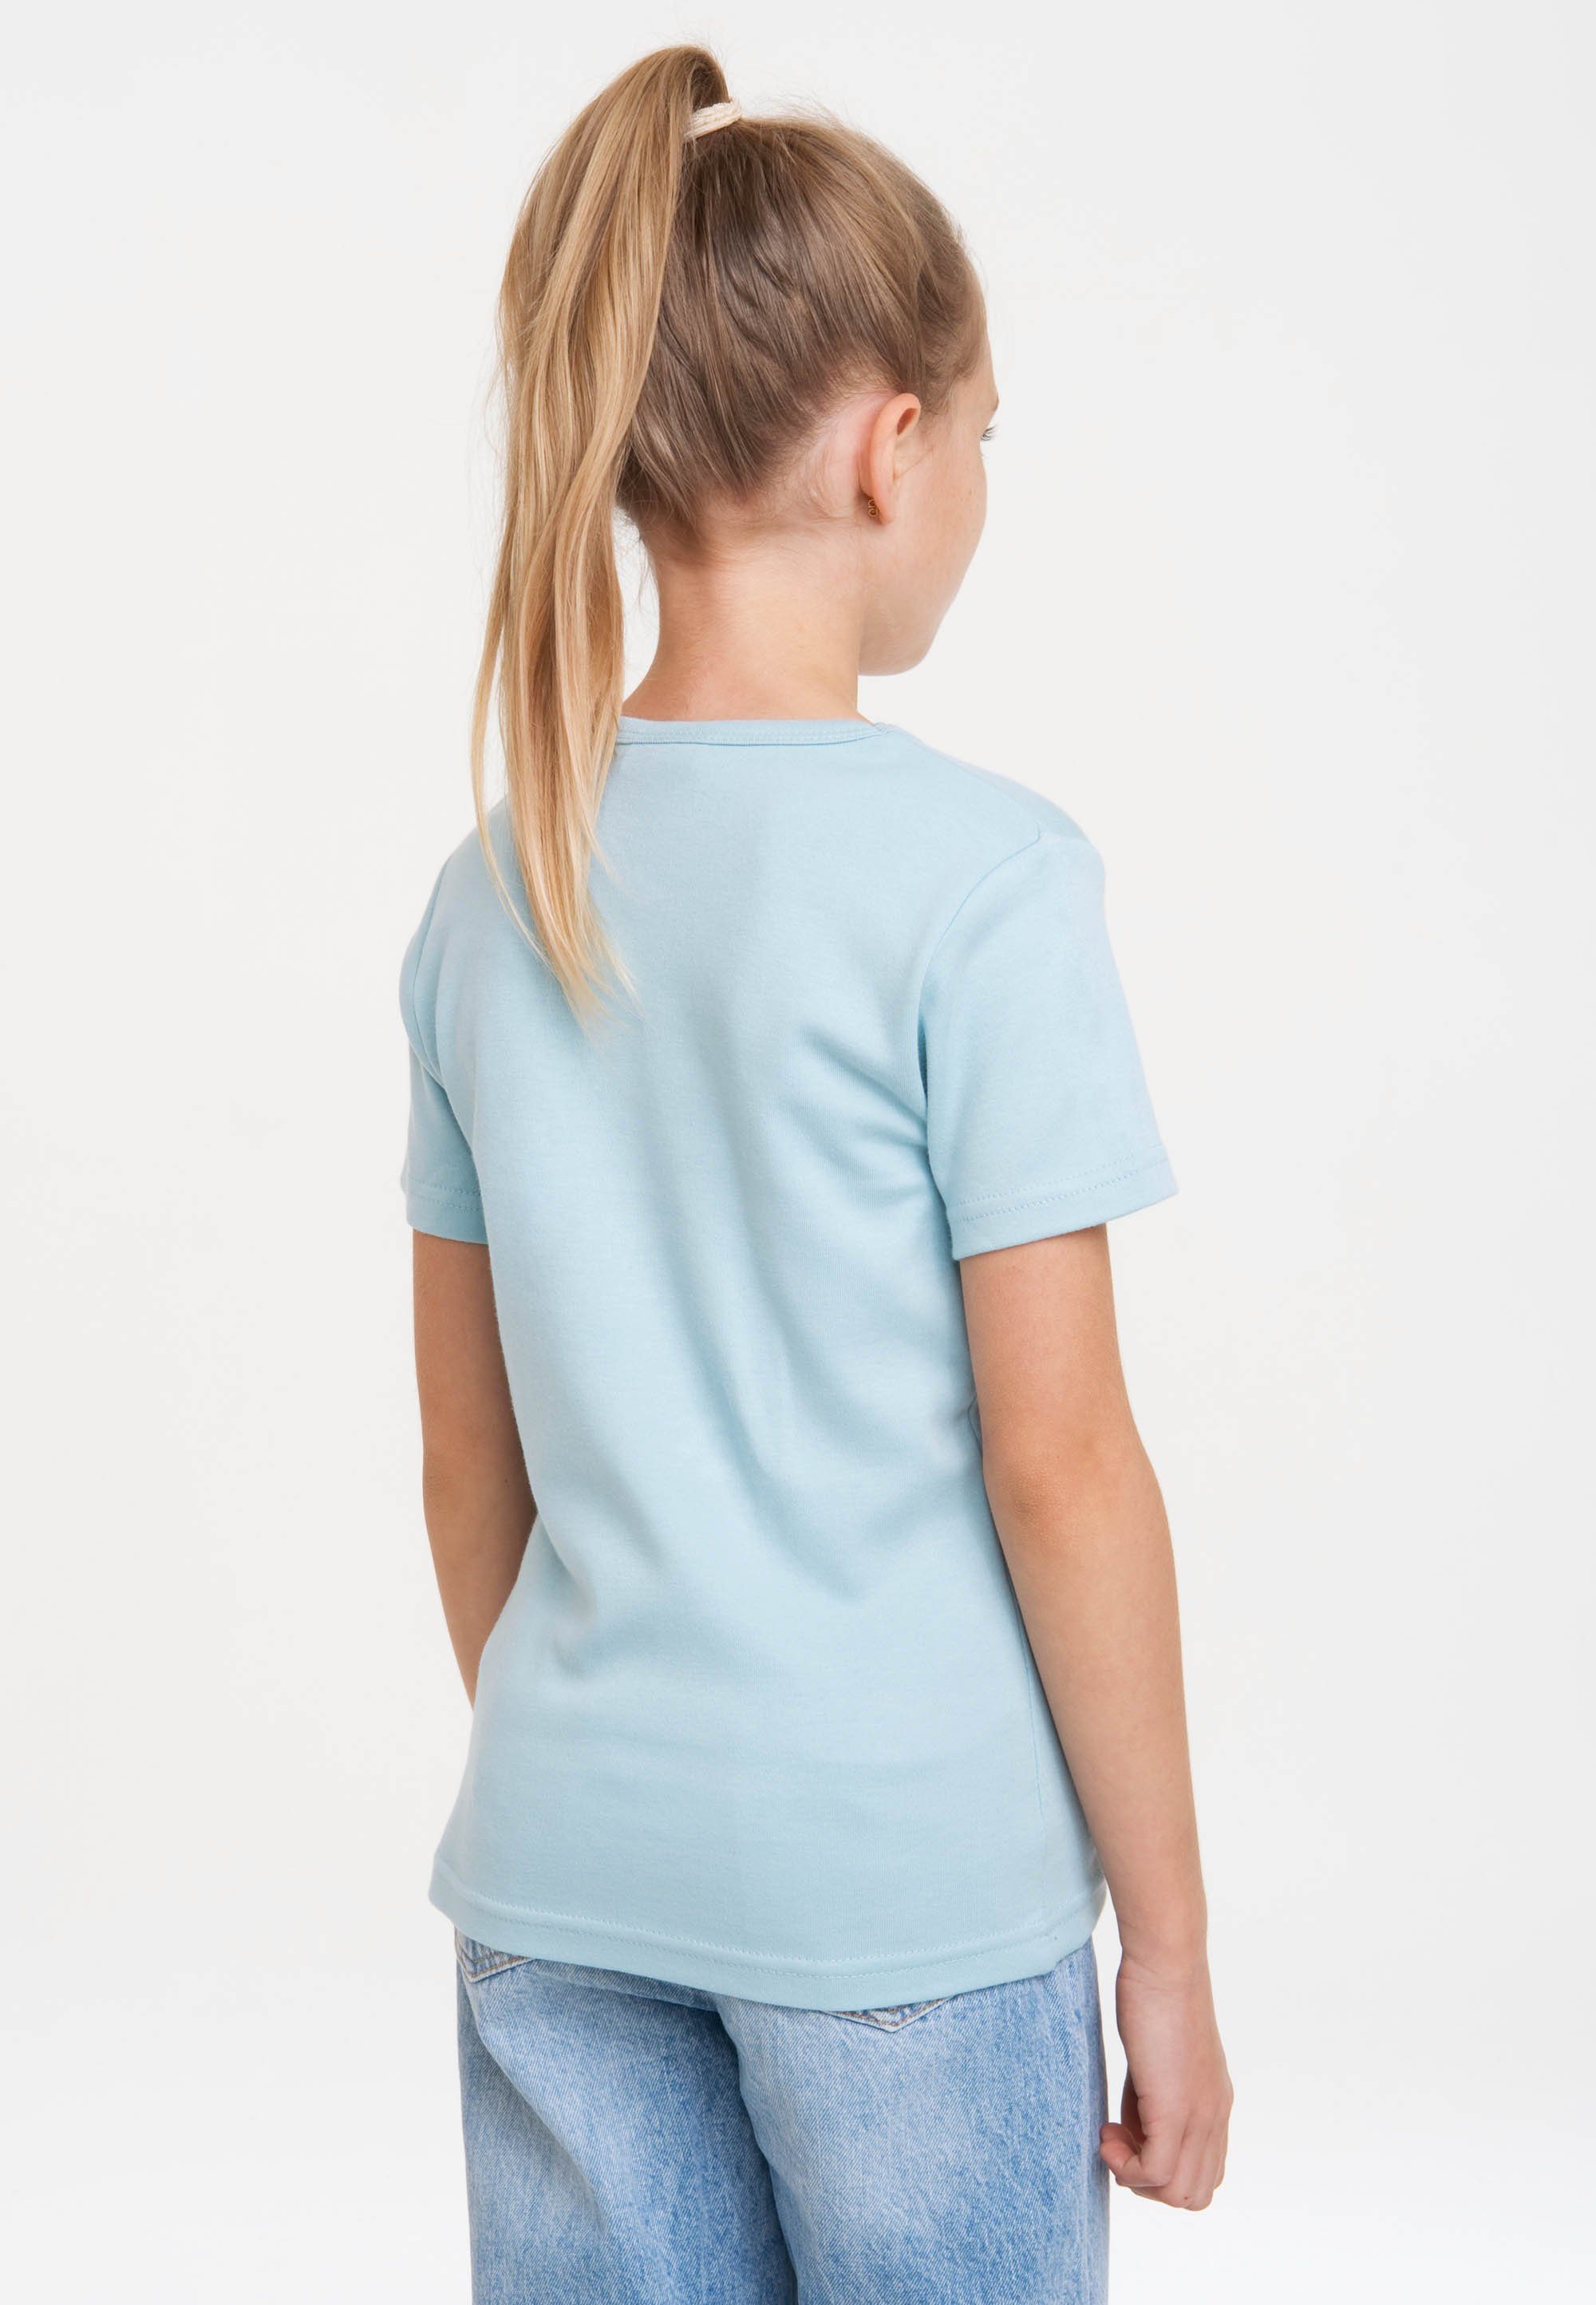 Originaldesign Maus Die LOGOSHIRT mit hellblau lizenziertem T-Shirt